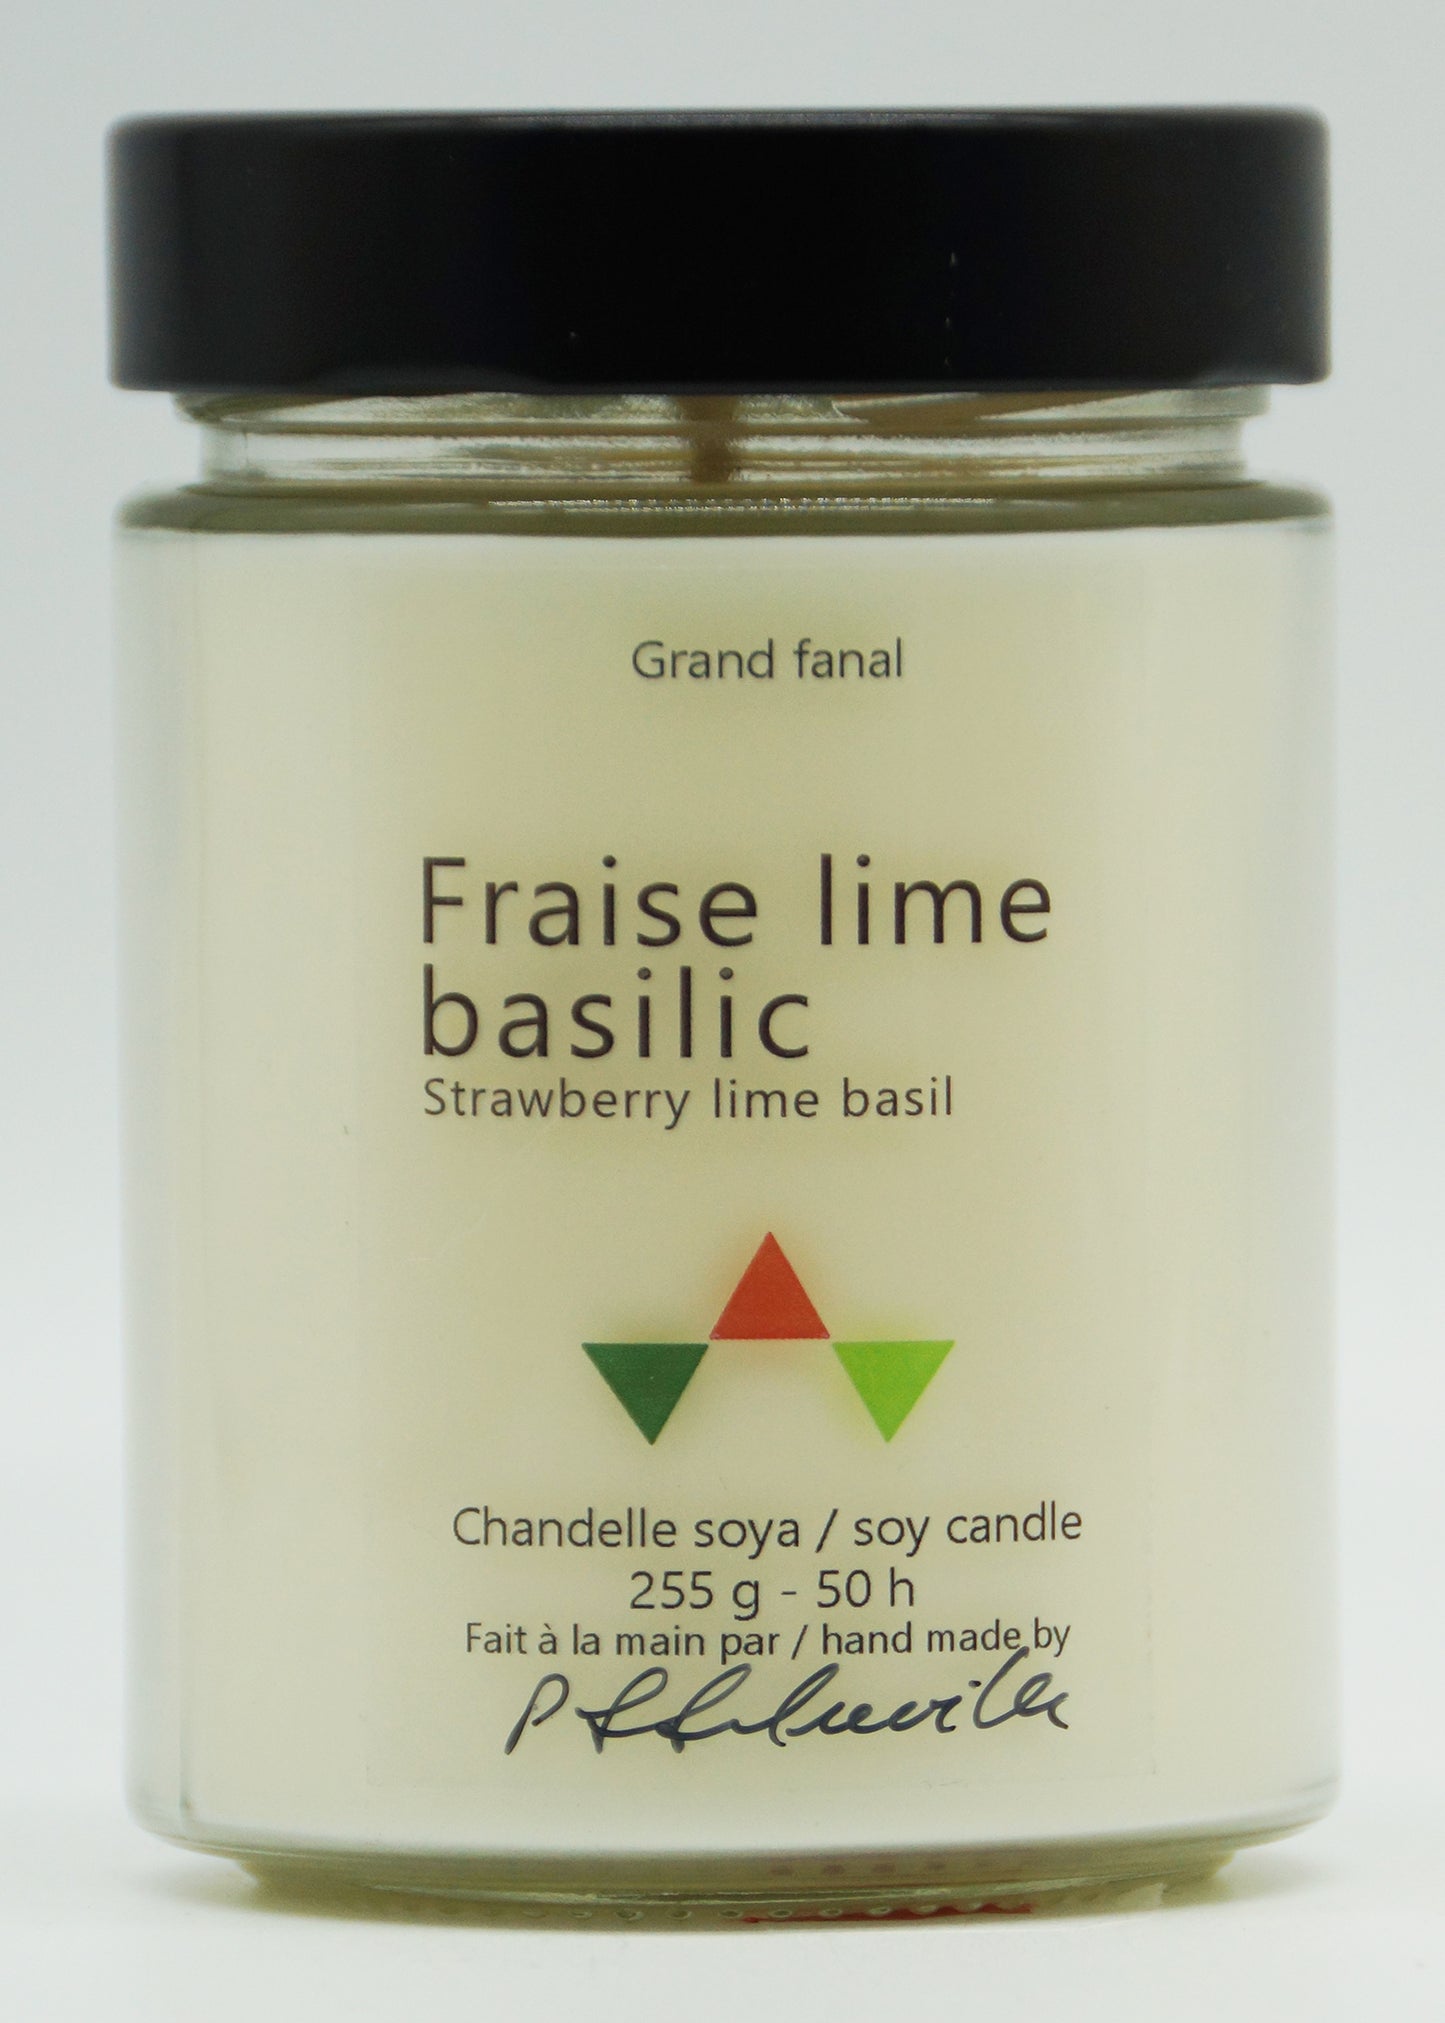 Fraise lime basilic